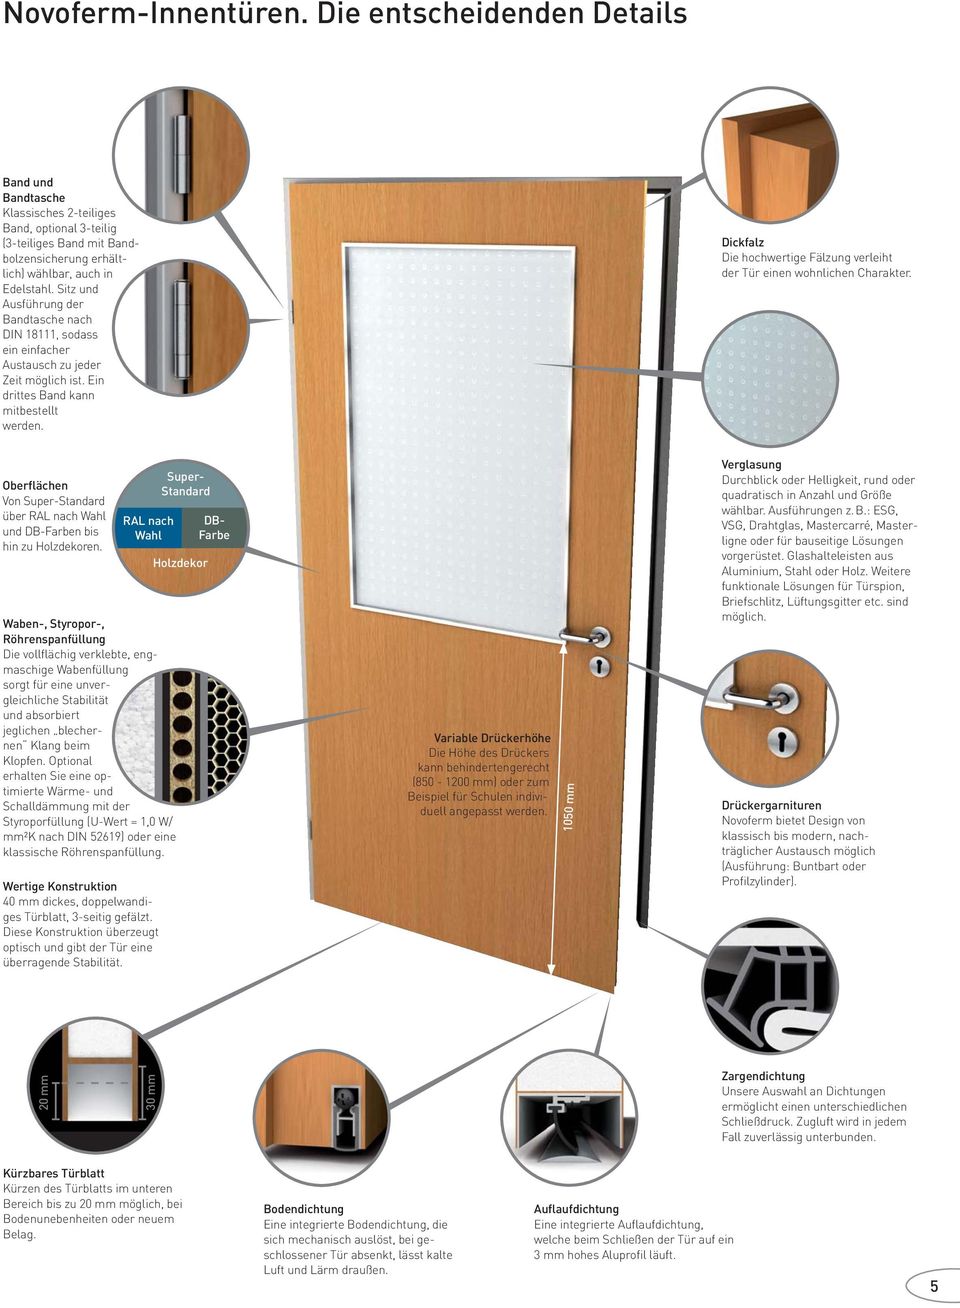 Dickfalz Die hochwertige Fälzung verleiht der Tür einen wohnlichen Charakter. Oberflächen Von Super-Standard über RAL nach Wahl und DB-Farben bis hin zu Holzdekoren.